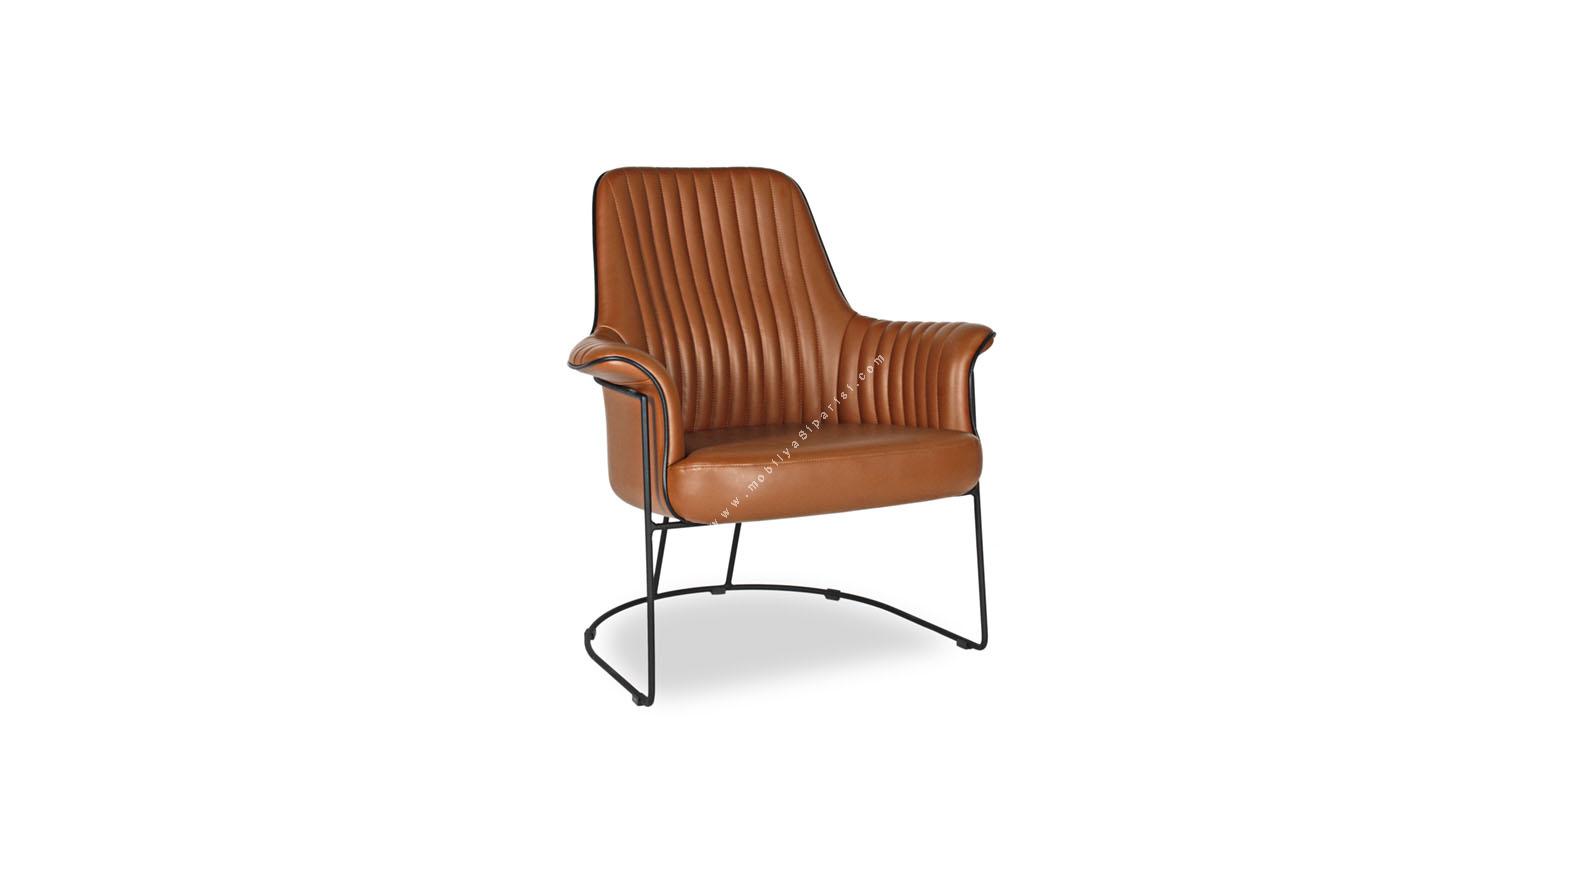 graner metal boyalı tasarım tel ayak misafir koltuğu